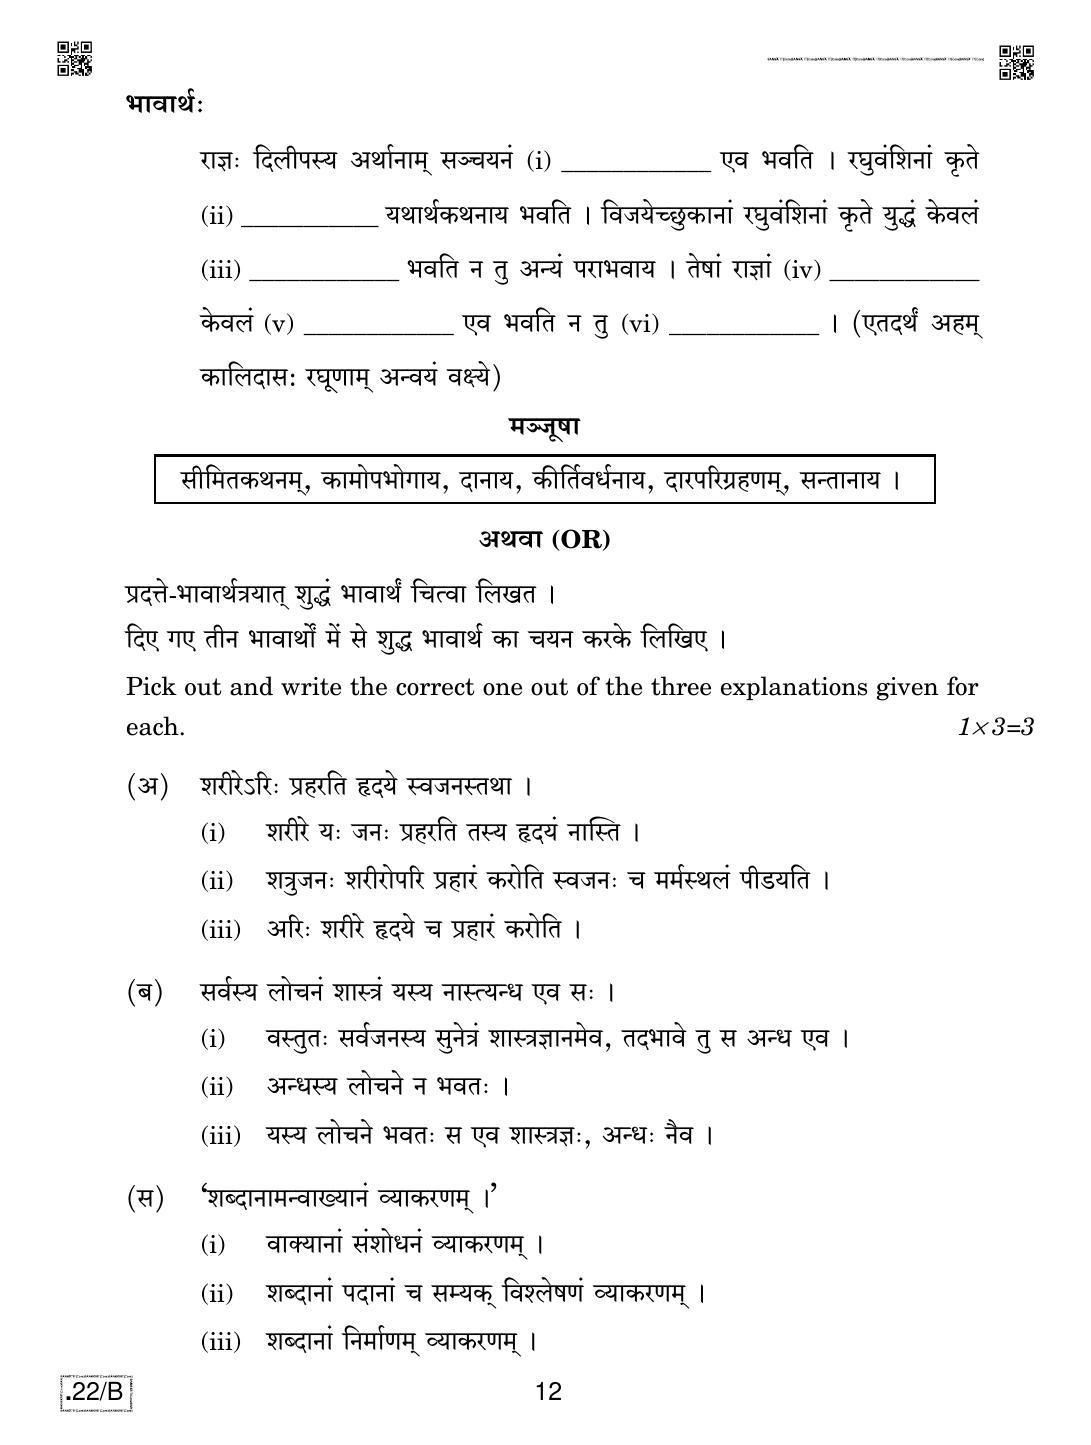 CBSE Class 12 Sanskrit Core 2020 Compartment Question Paper - Page 12